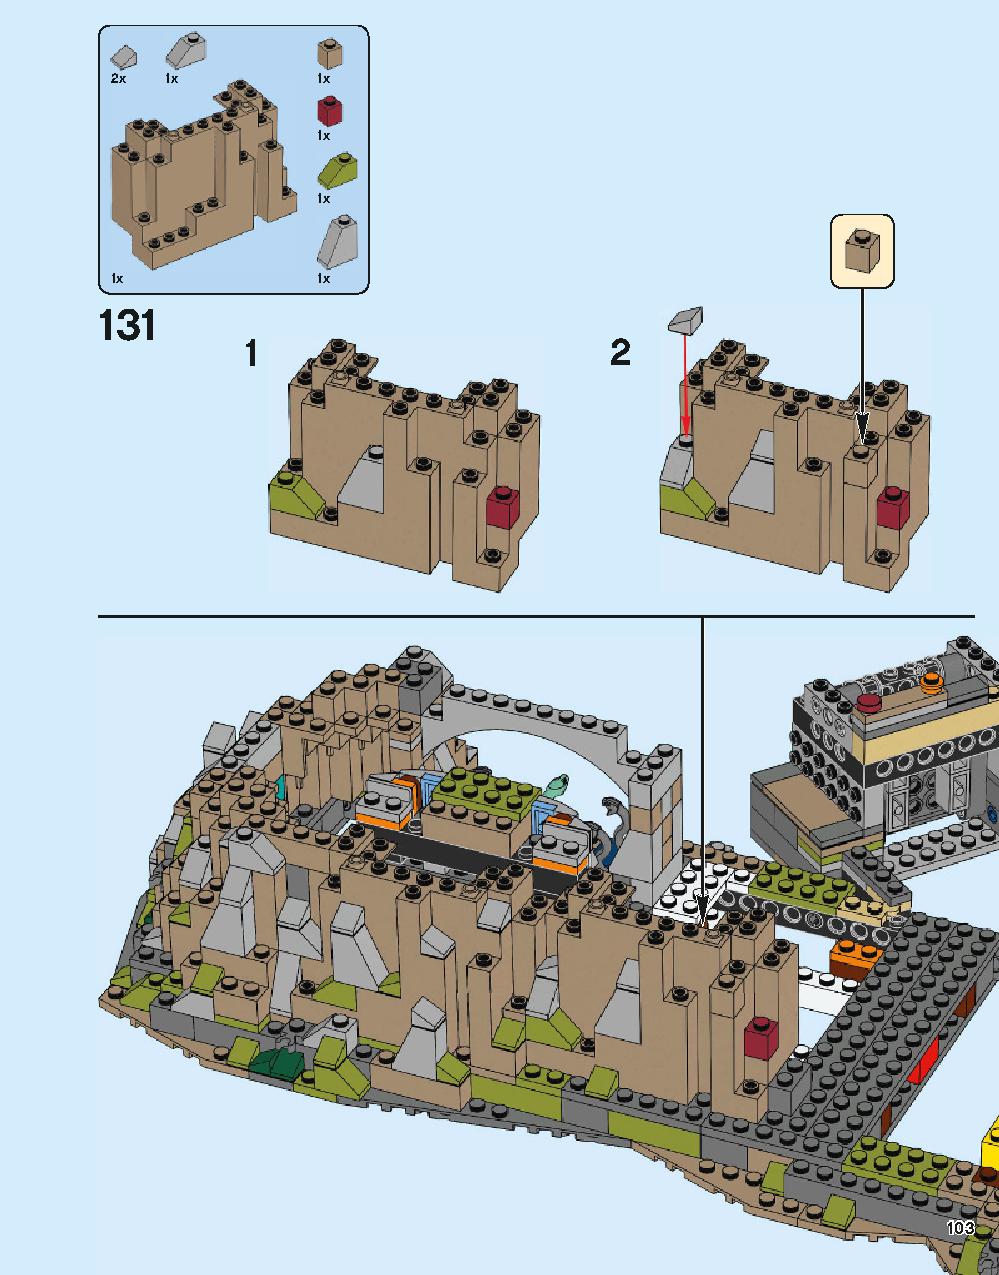 ホグワーツ城 71043 レゴの商品情報 レゴの説明書・組立方法 103 page